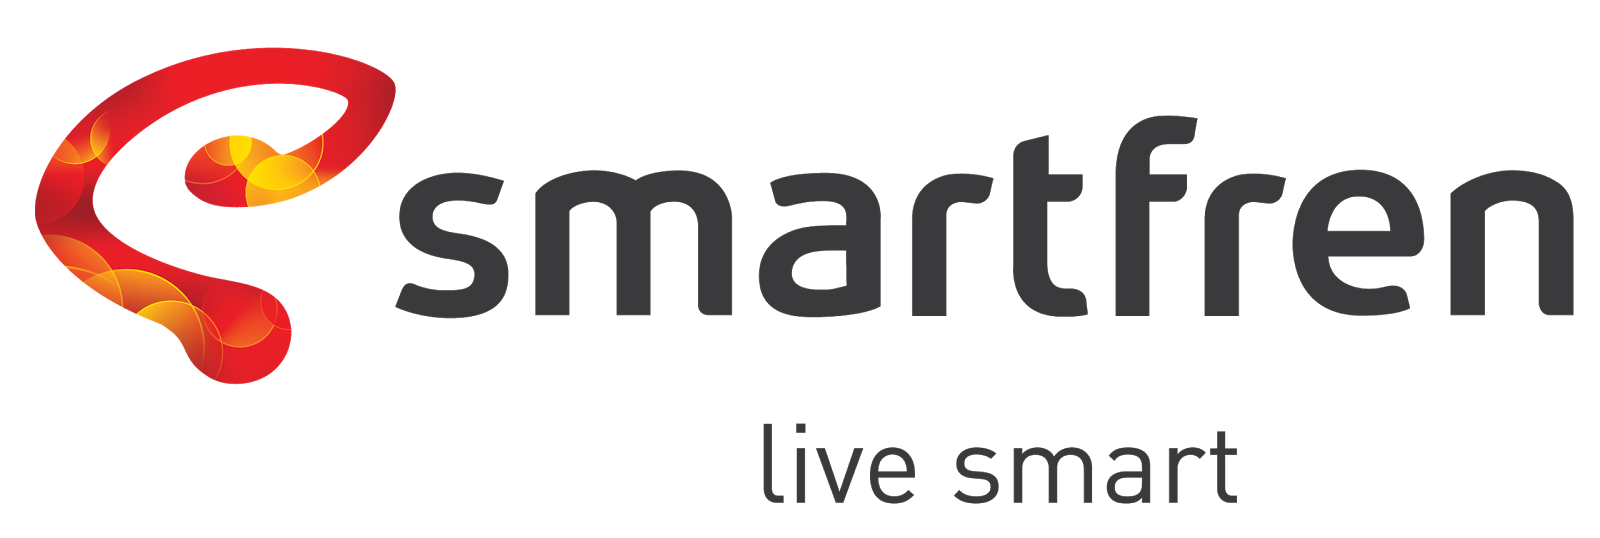 logo smartfren png